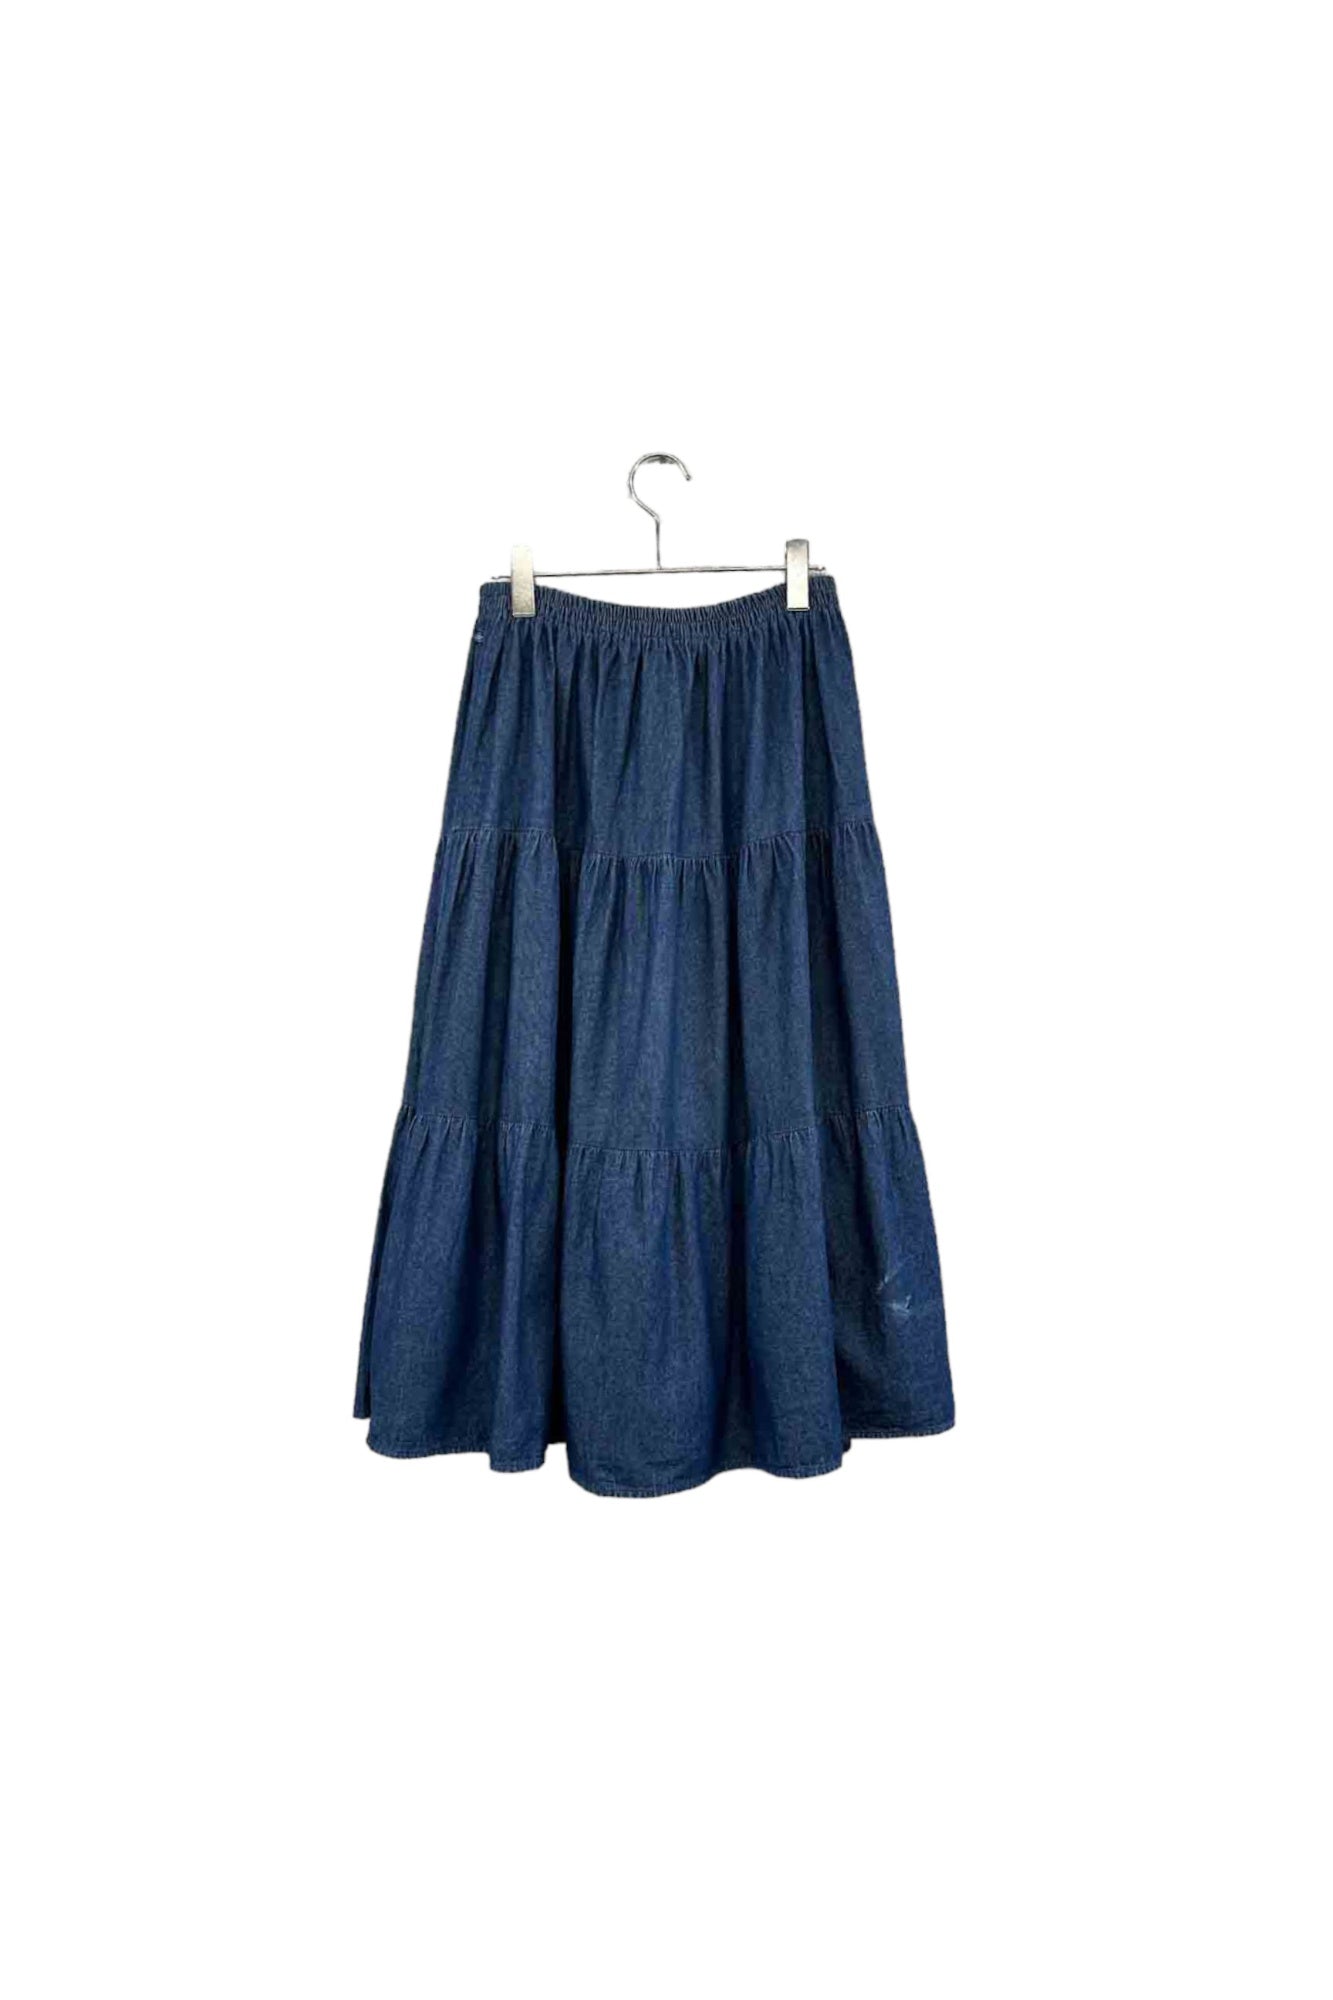 Made in USA Rockmount denim skirt